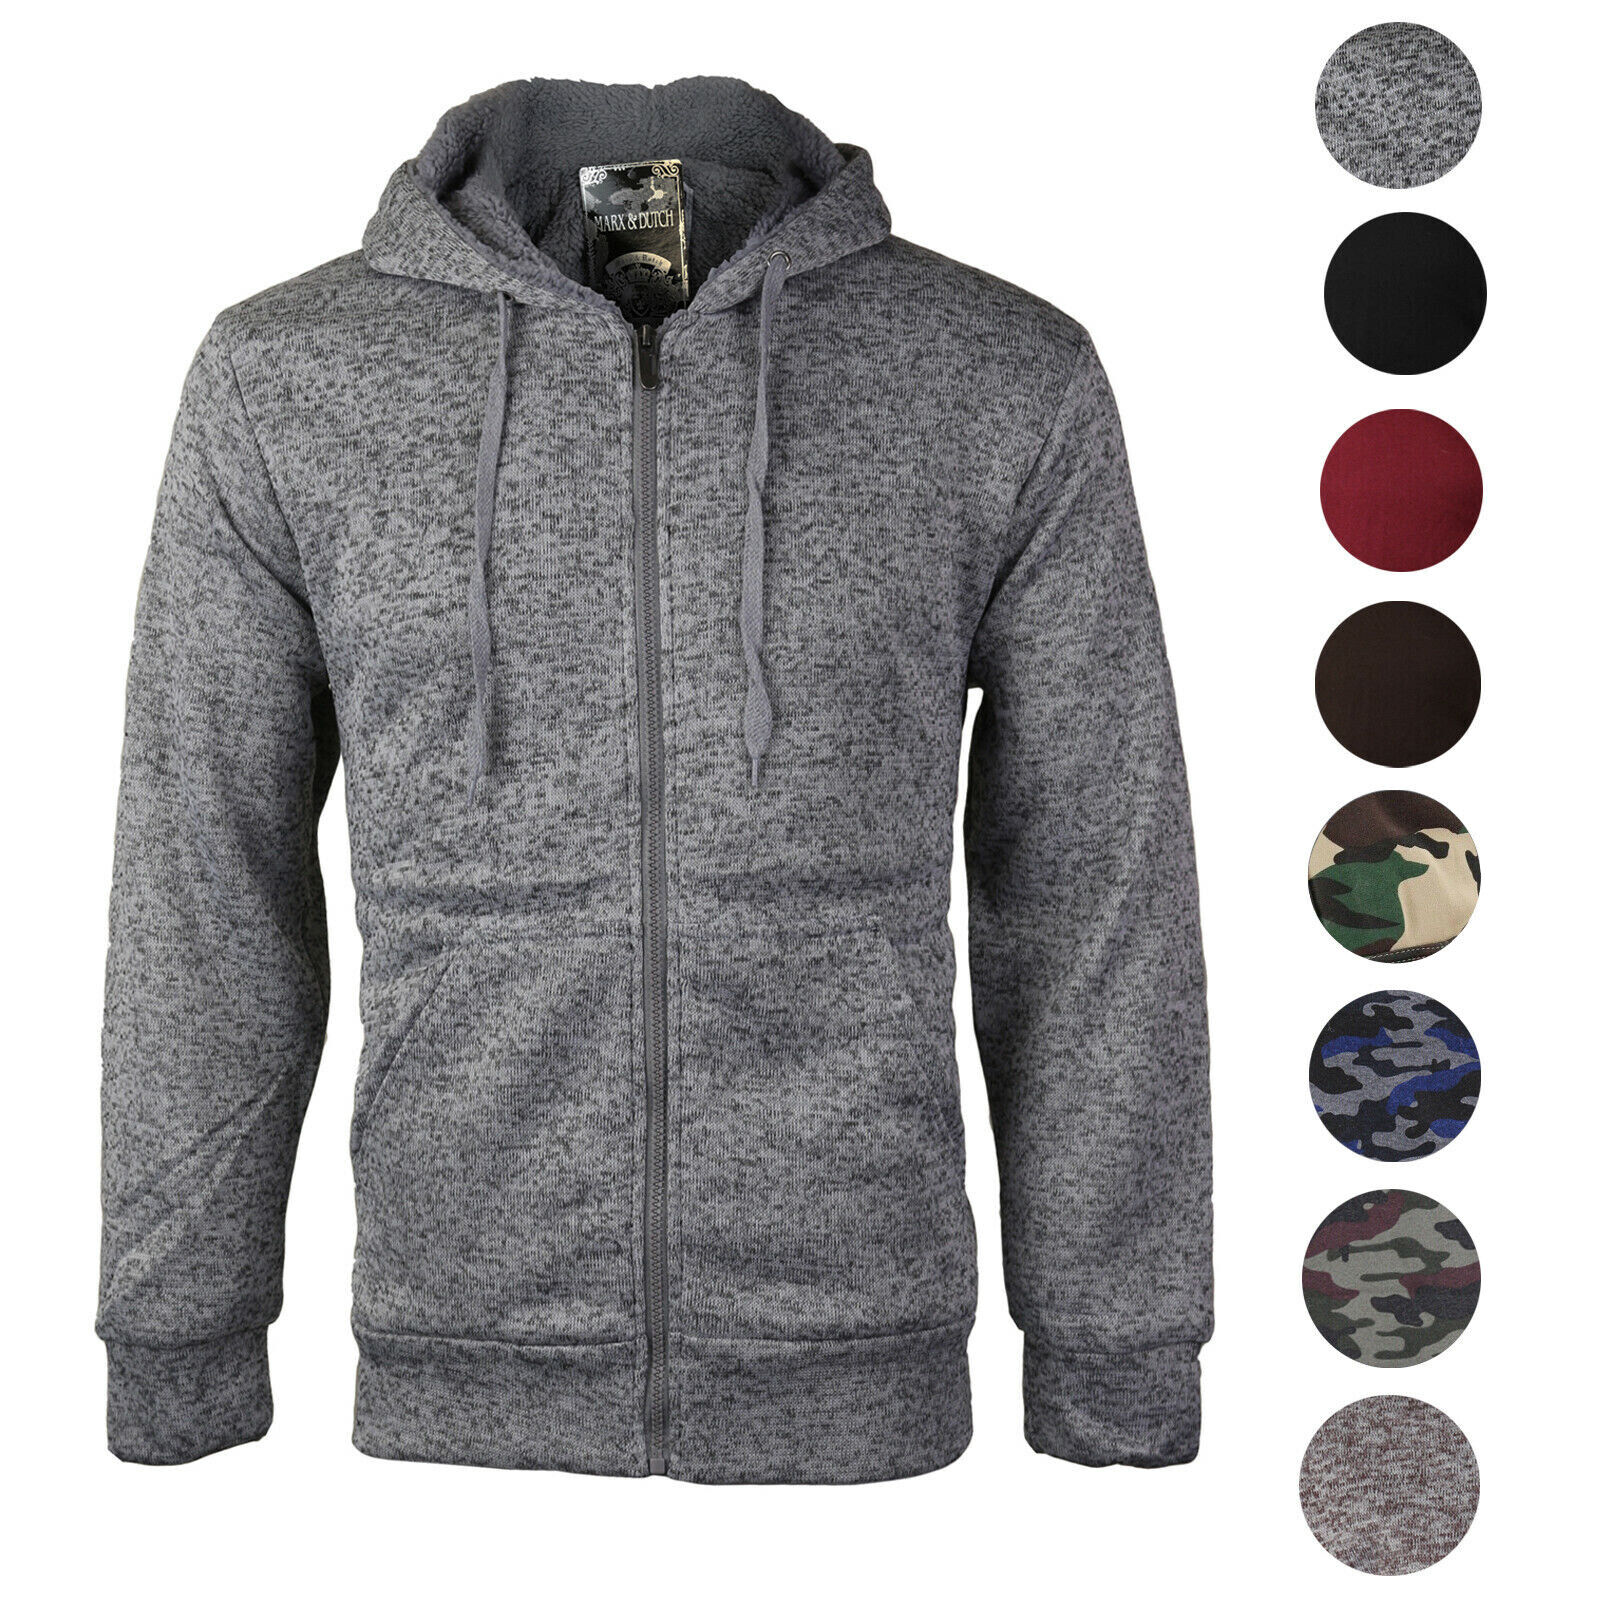 Men's Premium Athletic Soft Sherpa Lined Fleece Zip Up Hoodi